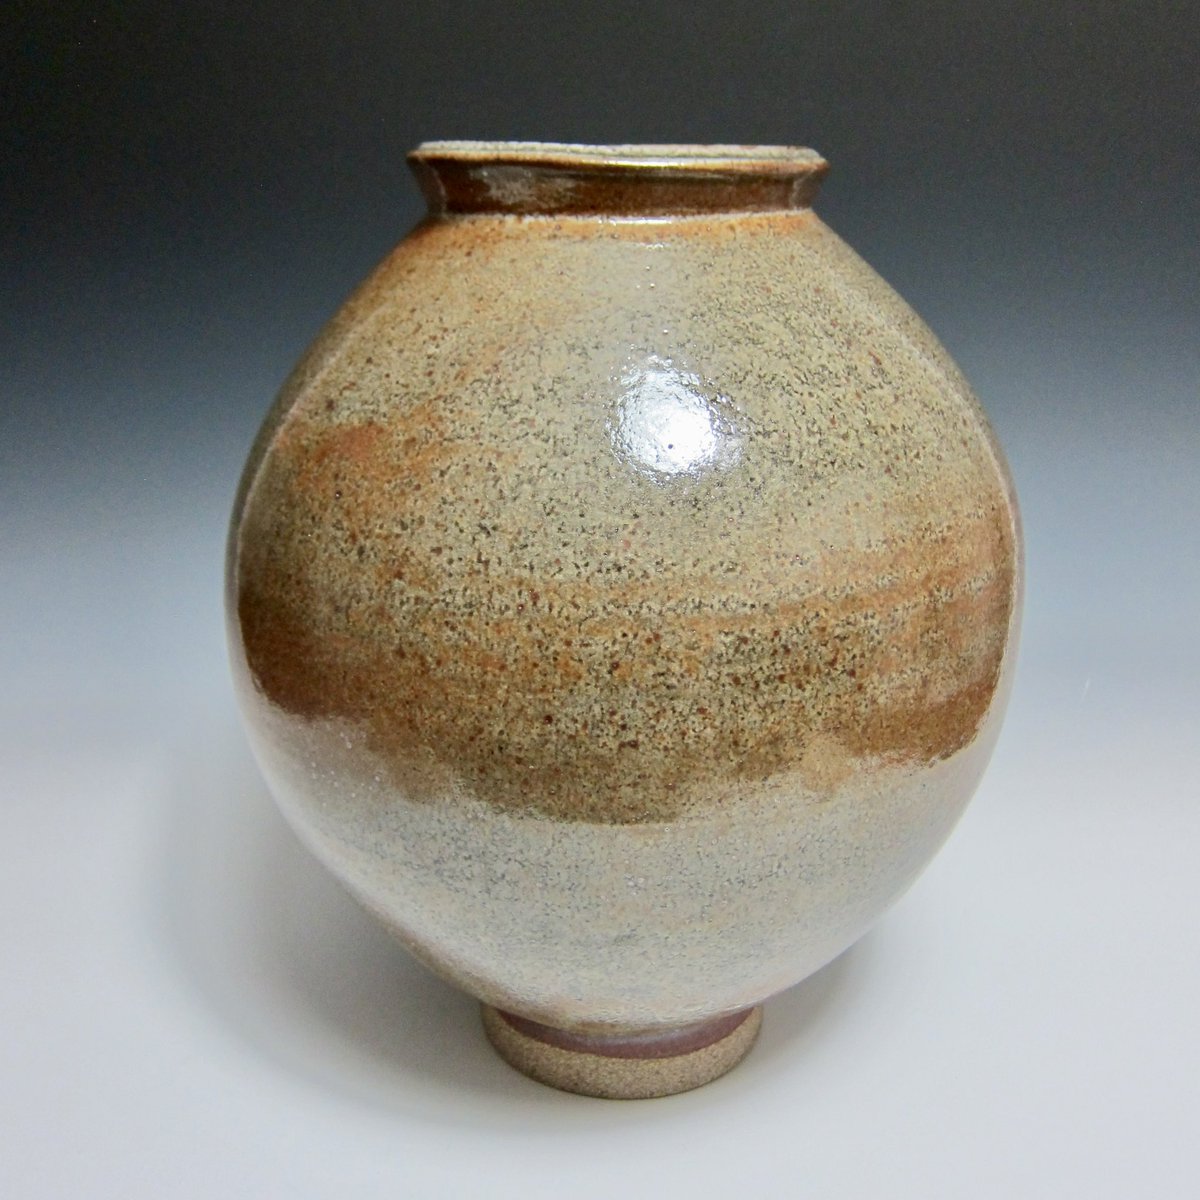 This shino moon jar giving that big shino energy! 13” tall. 
.
.
.
.
.
#moonjar #shino #ceramics #pottery #interiordecor #clay #fineart #art #shinoglaze #reductionfired #wheelthrownpottery #jasonfoxceramics